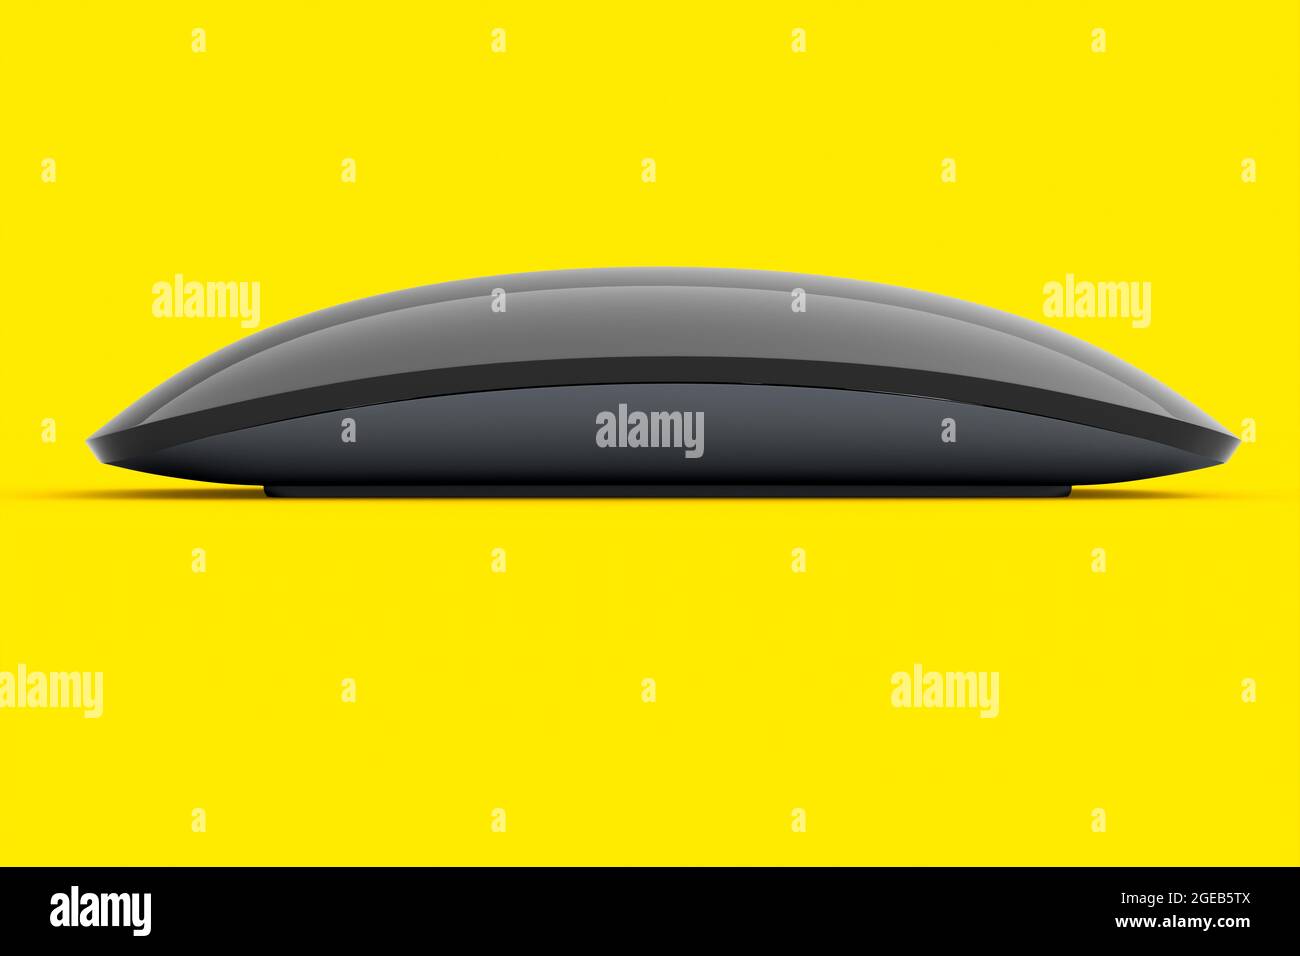 Ratón de ordenador negro realista con aislamiento táctil sobre fondo amarillo. 3D Representación del panel táctil inalámbrico del portátil para la oficina doméstica y el espacio de trabajo Foto de stock